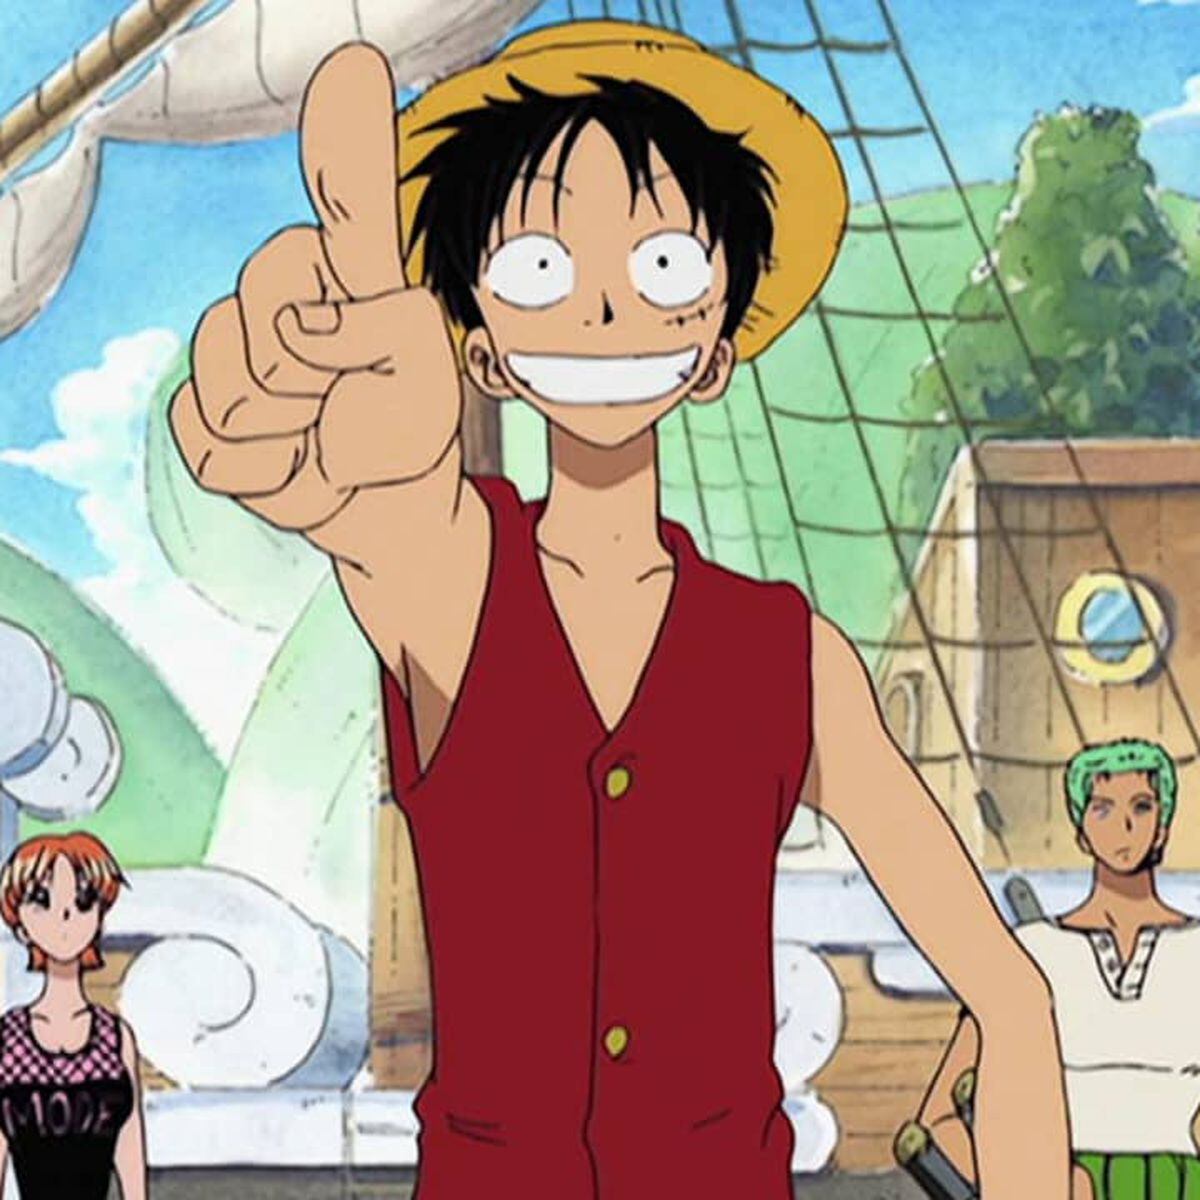 One Piece ganha livro de receitas de piratas; confira